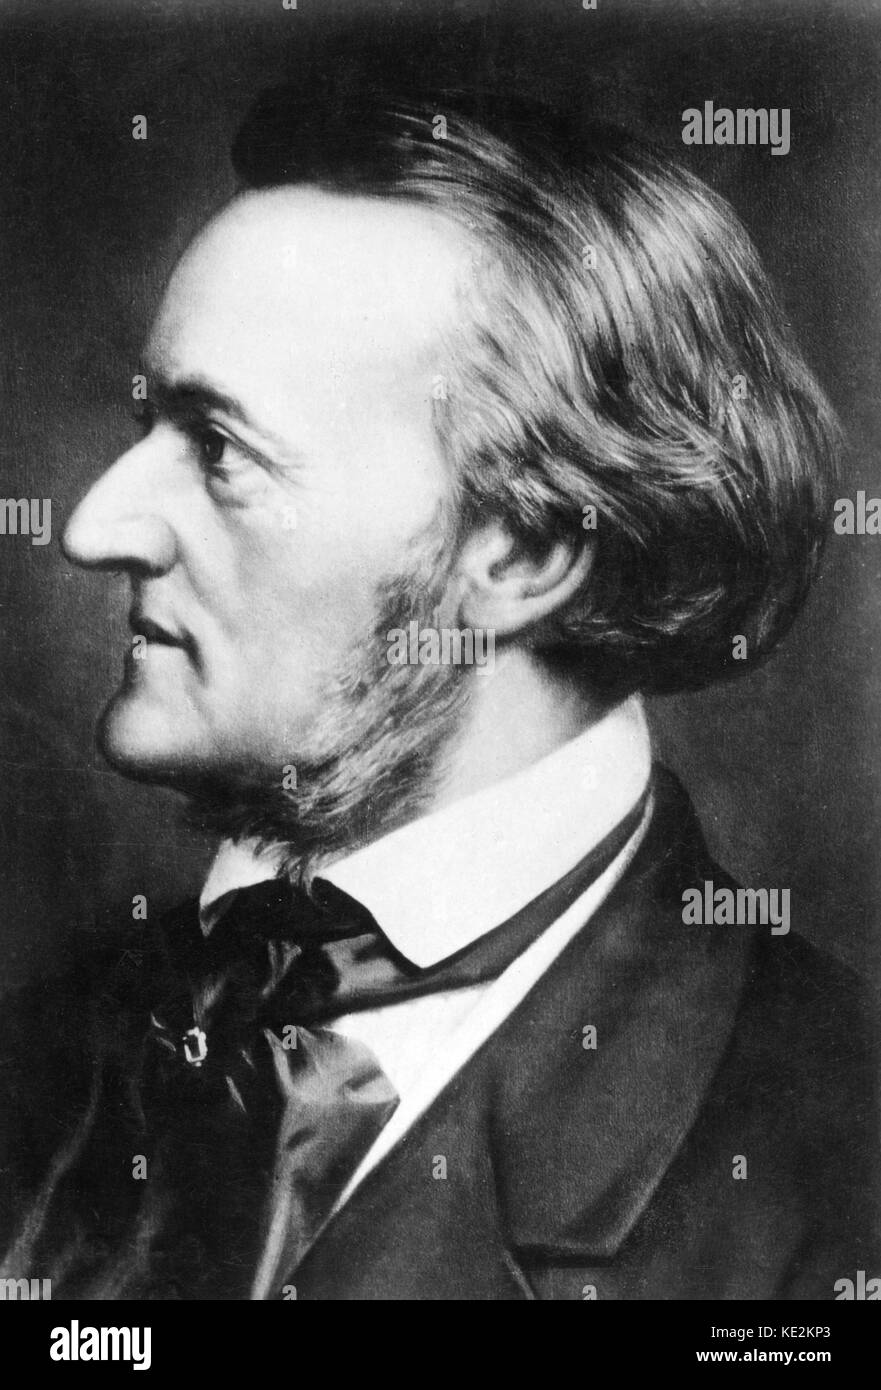 Richard Wagner portrait. Fotografia. Compositore tedesco & autore, 22 maggio 1813 - 13 febbraio 1883. Foto Stock